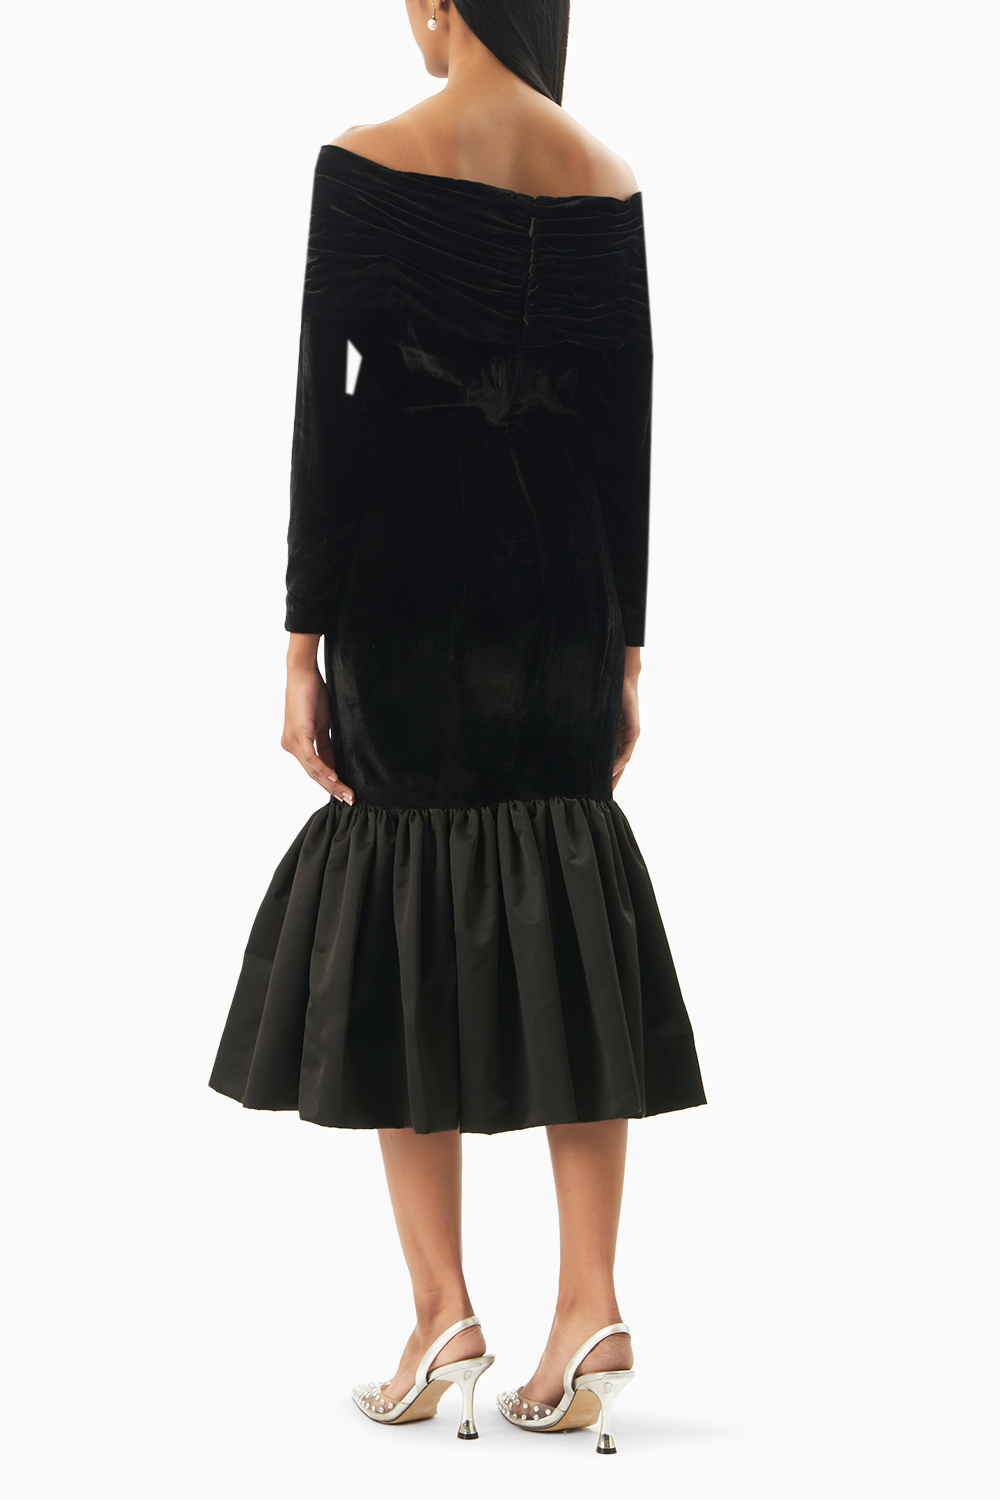 Black Chic Ruffle Velvet Noir Dress